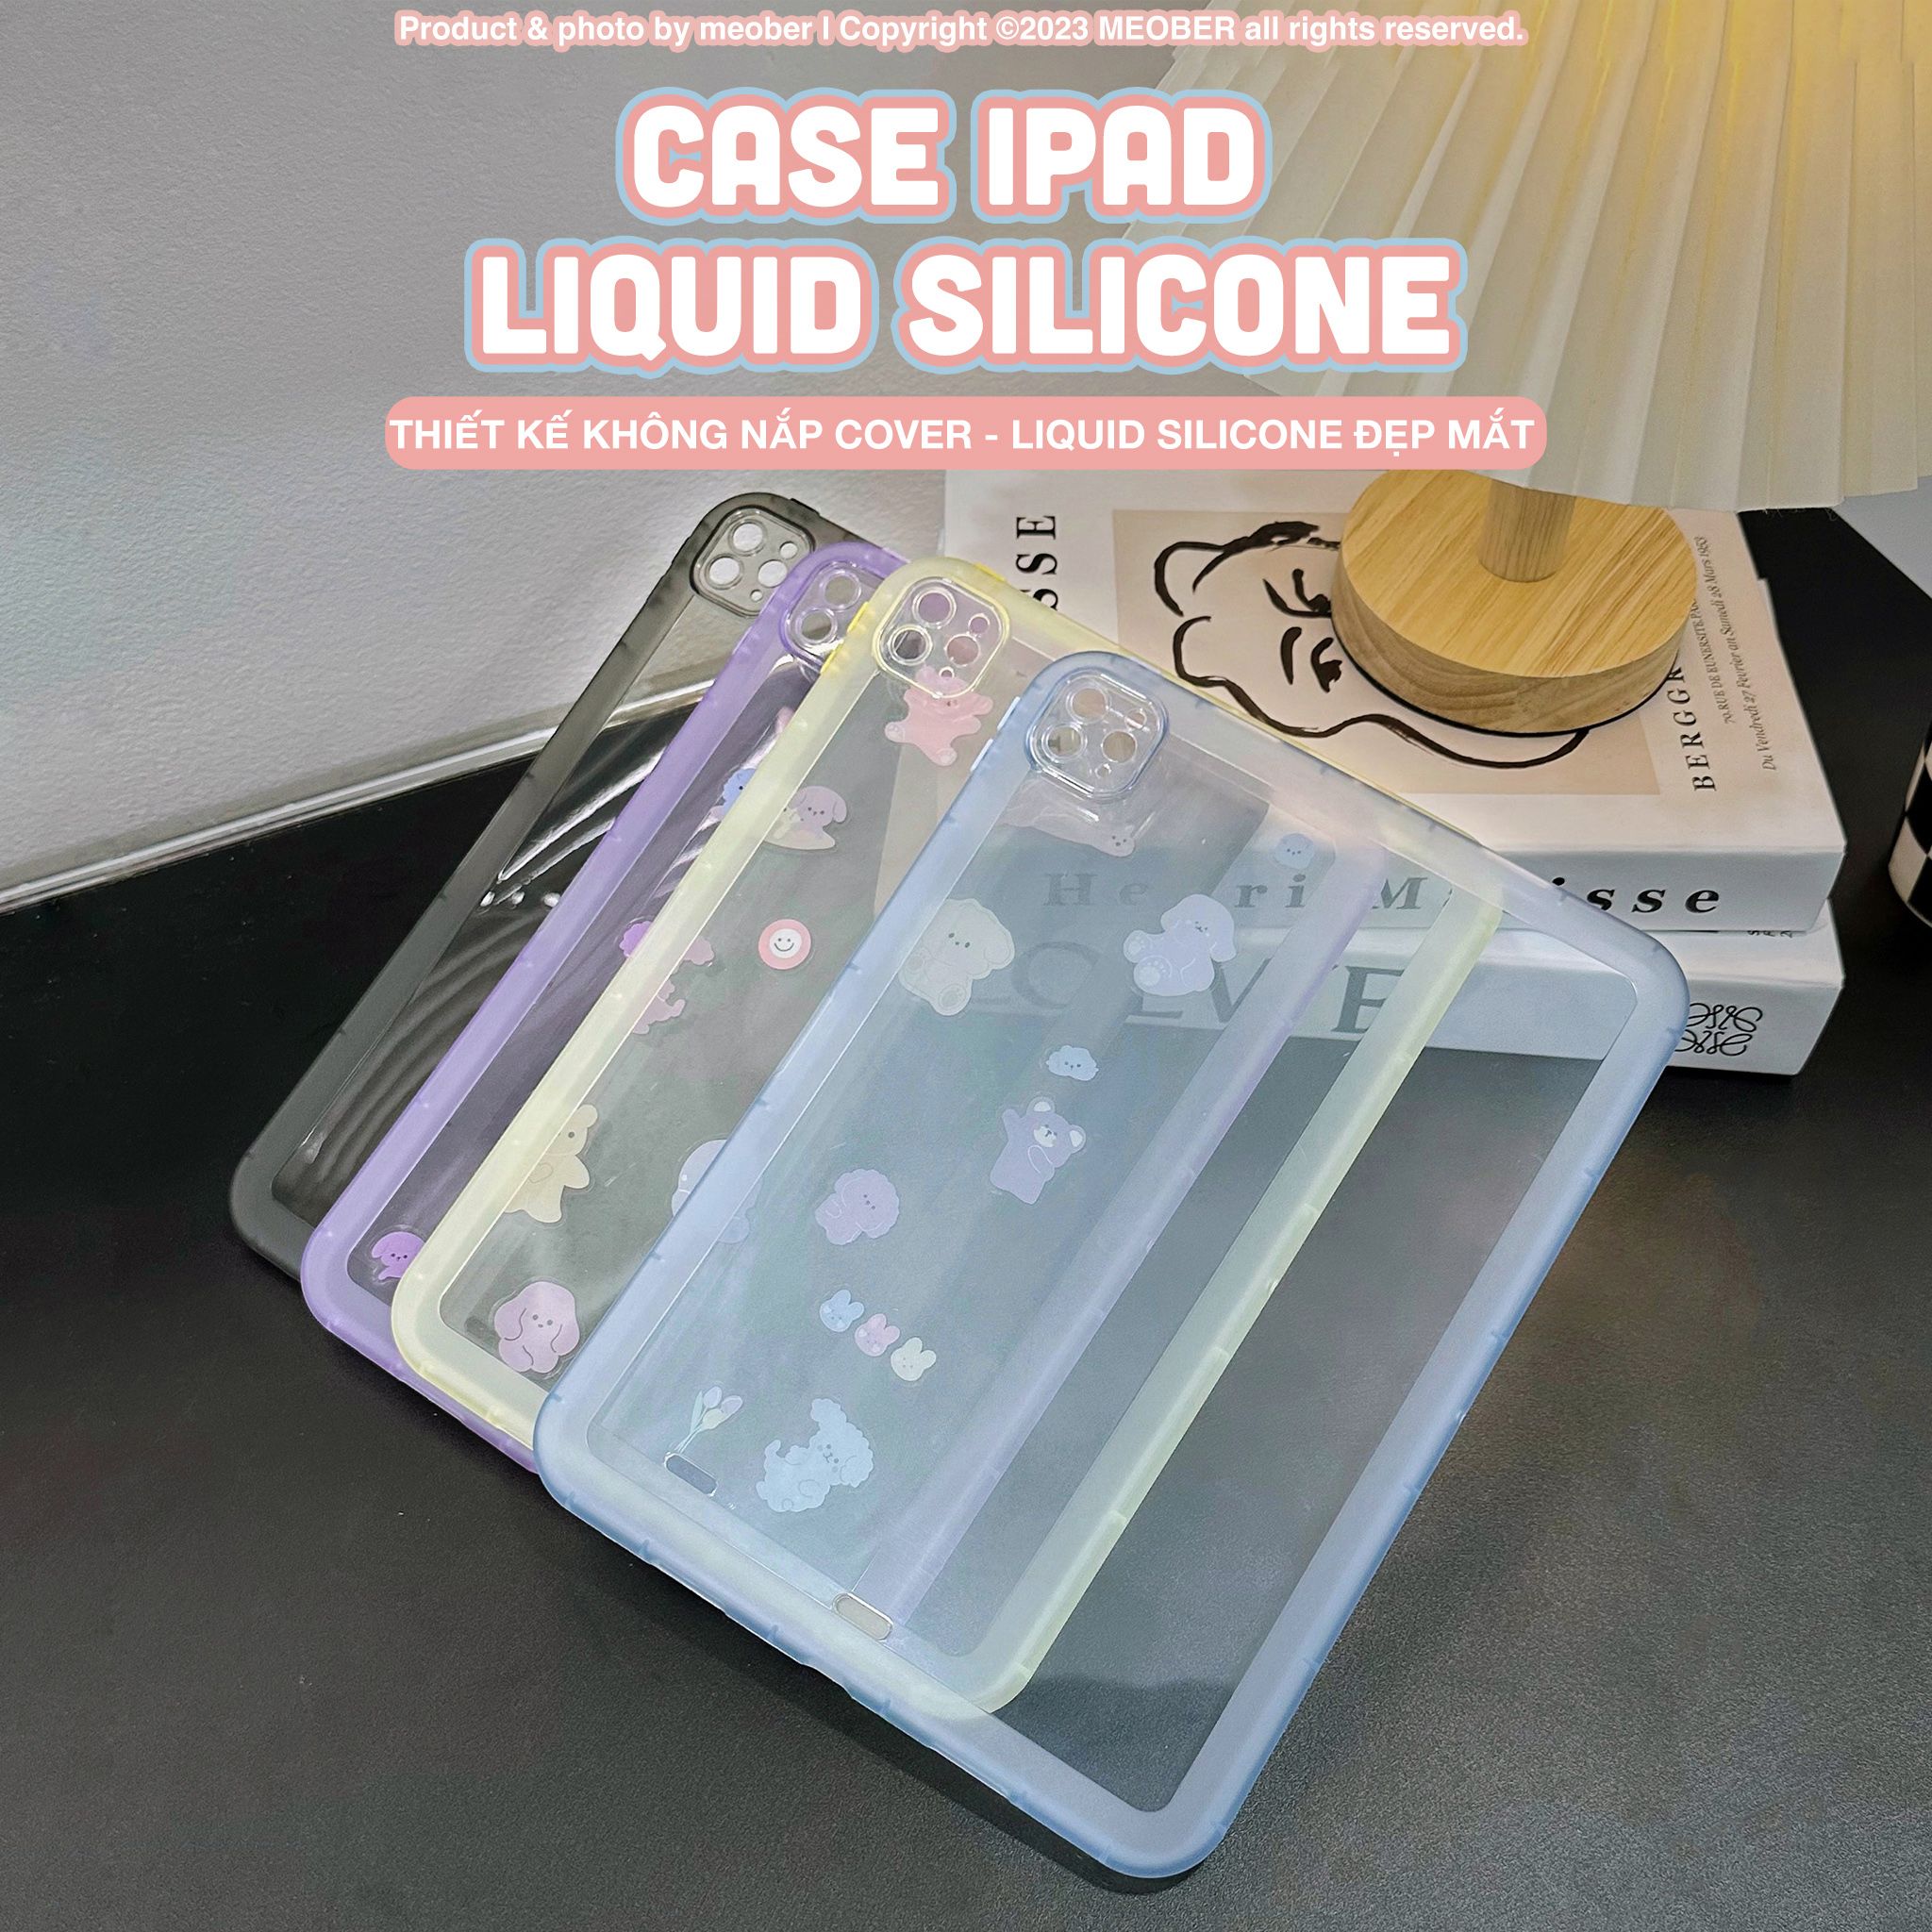  Case iPad Liquid Silicone - Thiết kế không nắp cover , siêu mỏng nhẹ, màu sắc pastel trong suốt dành cho Gen 7/8/9 Air4/5 Pro 11 v.v 